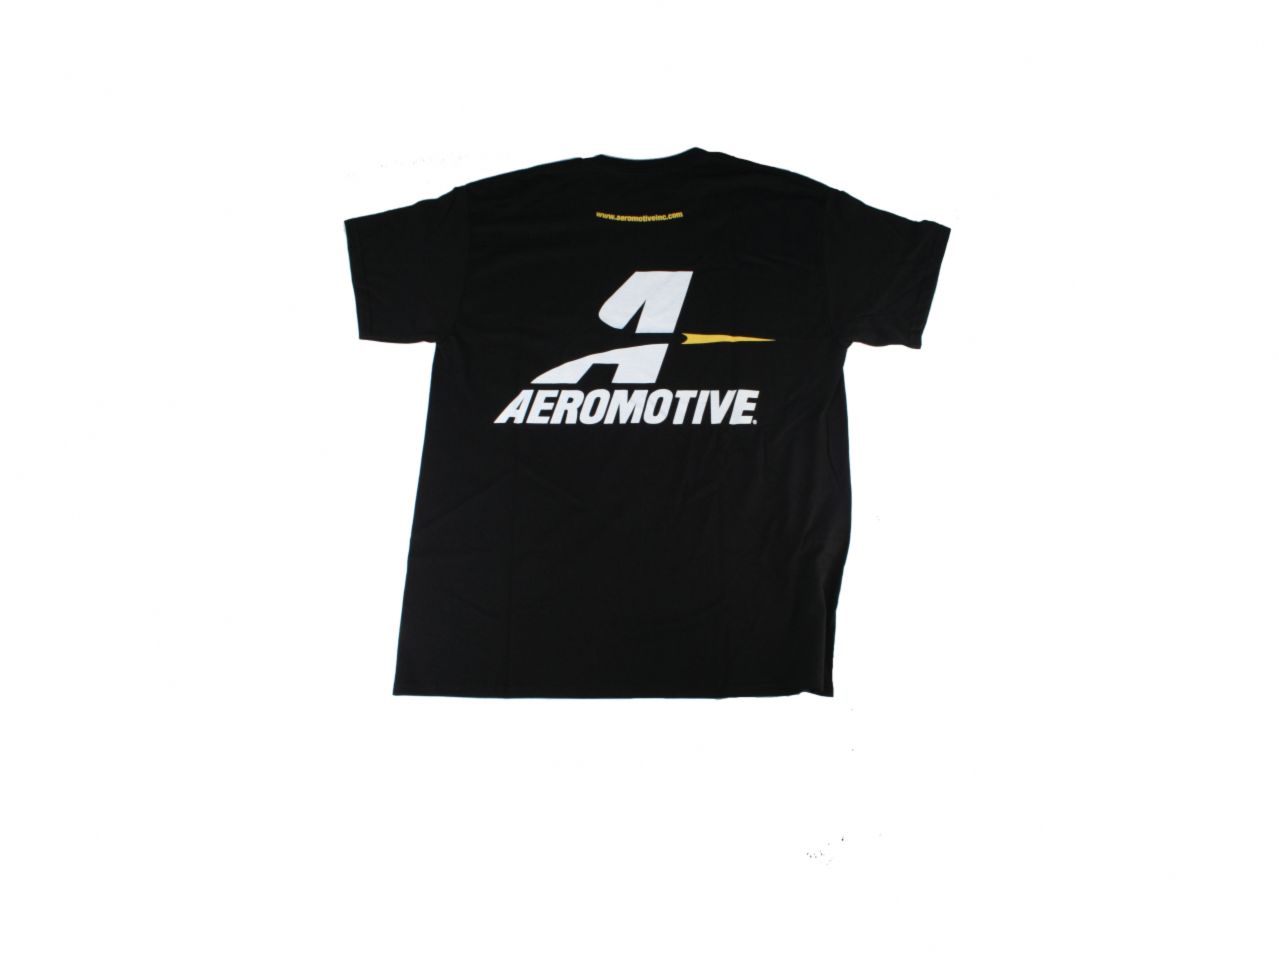 Aeromotive Shirts 91018 Item Image